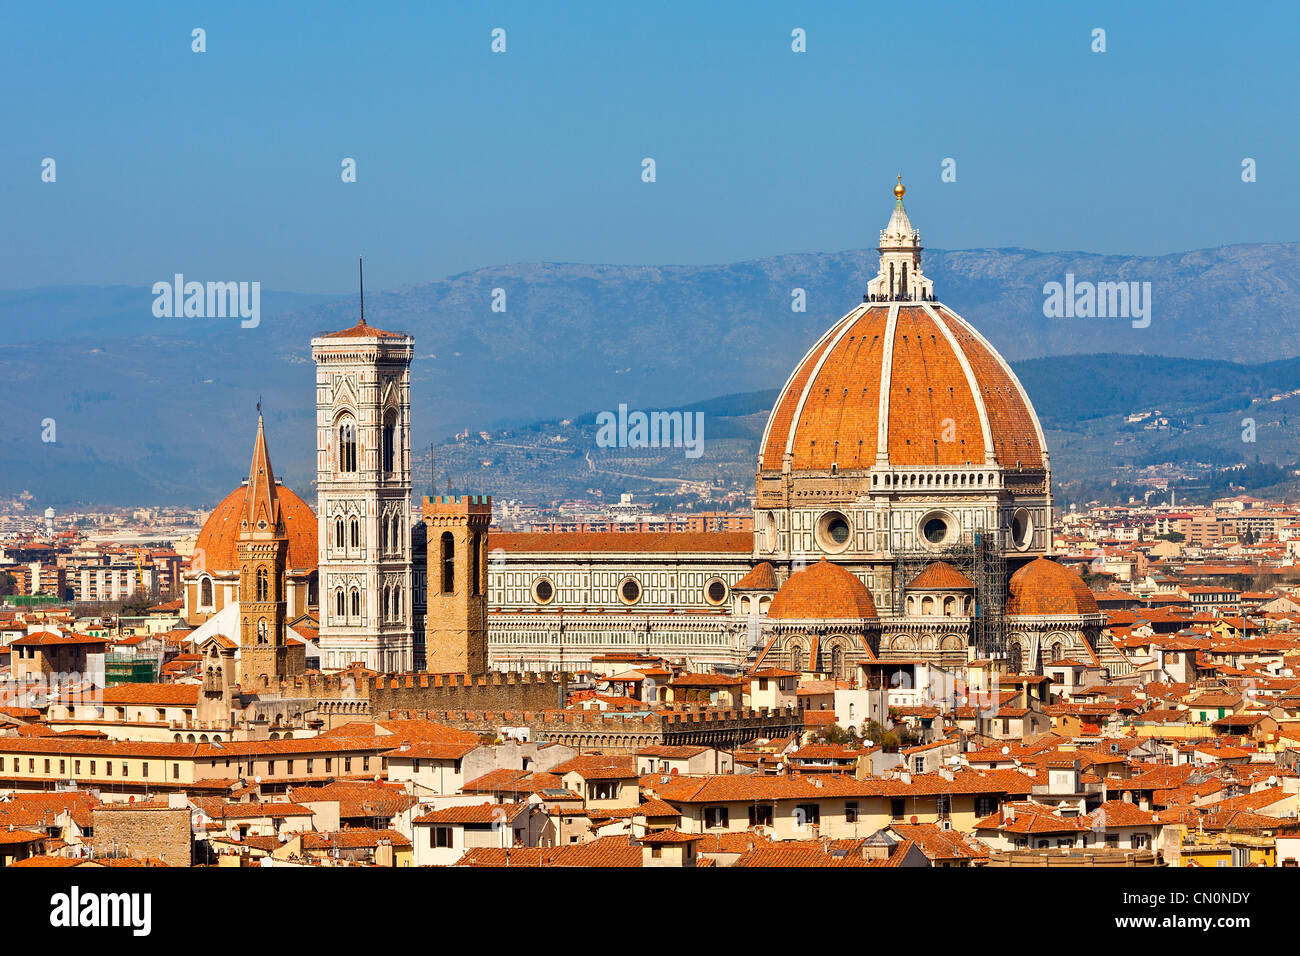 Florence, Duomo Santa Maria del Fiore Stock Photo